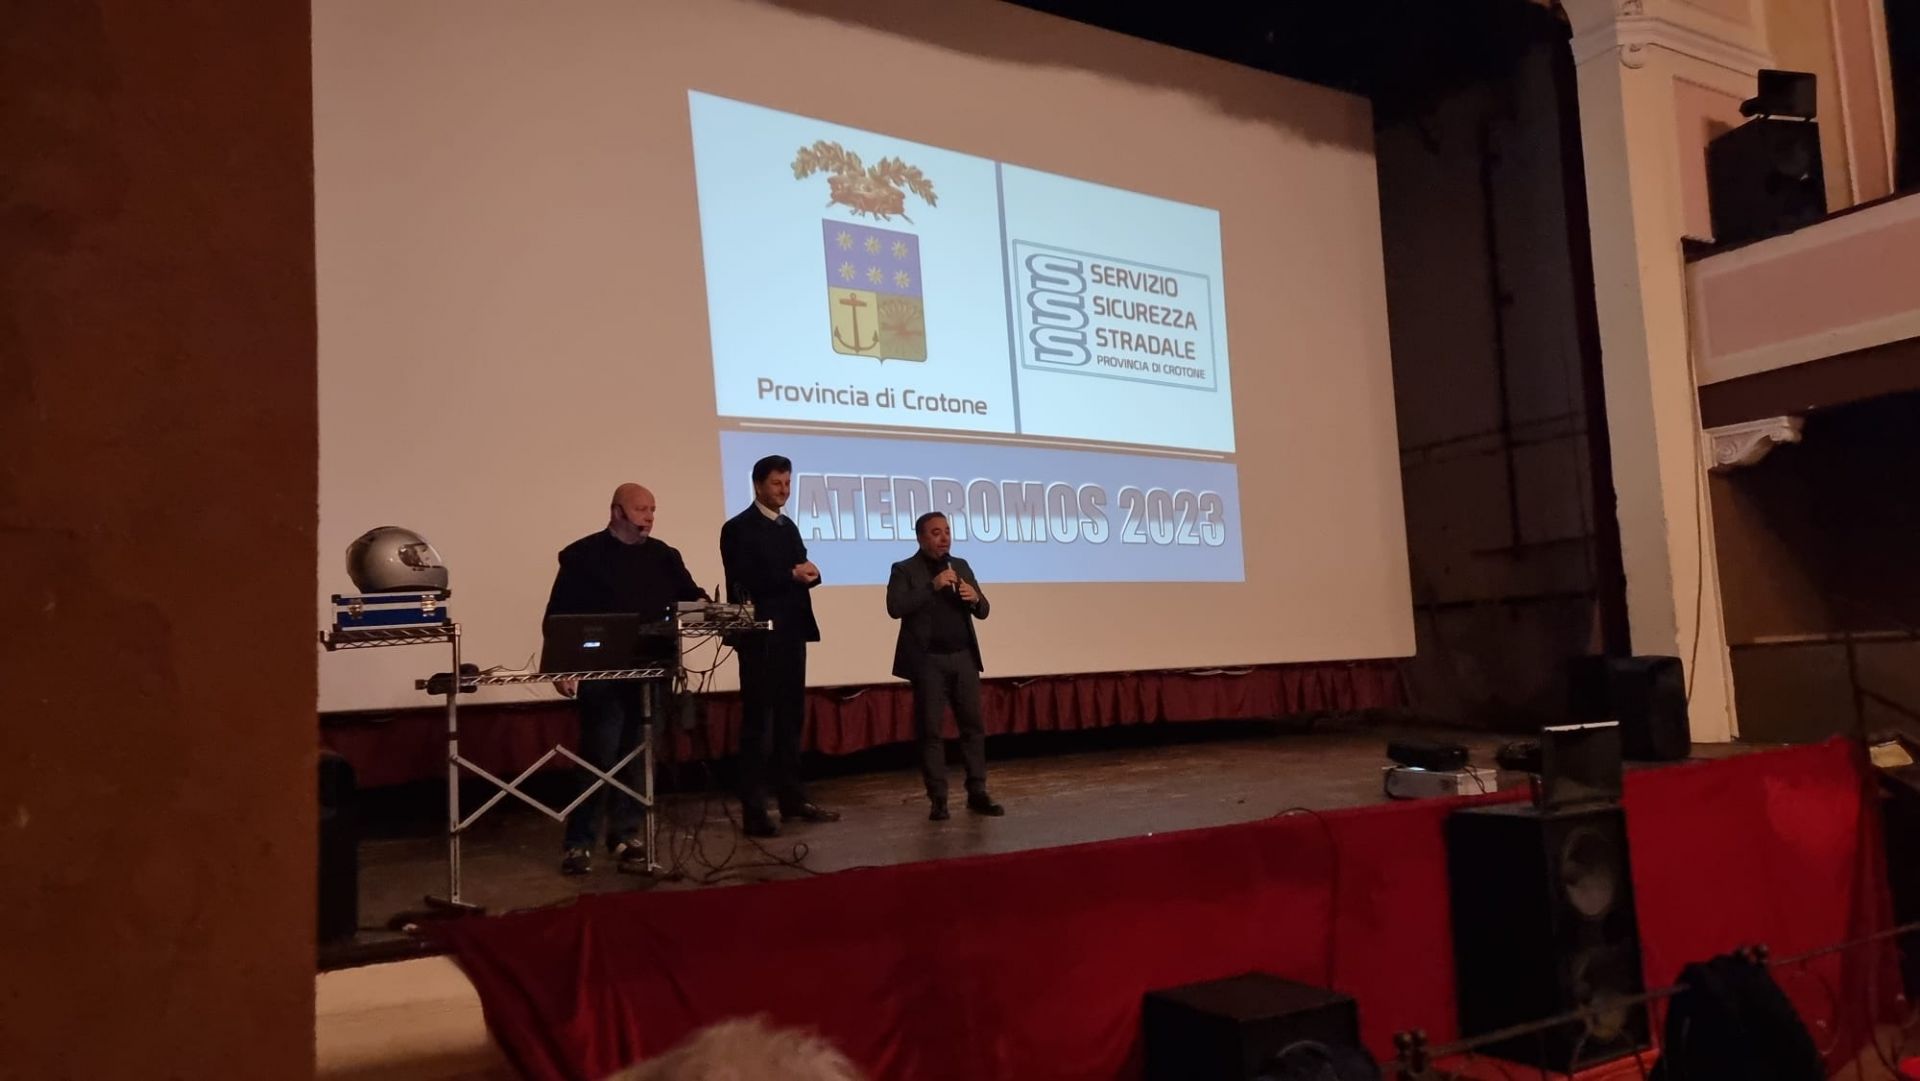 Katedromos-Catechismo sulla Sicurezza Stradale, a Crotone due giornate dedicate all'eduzione e alla sicurezza stradale